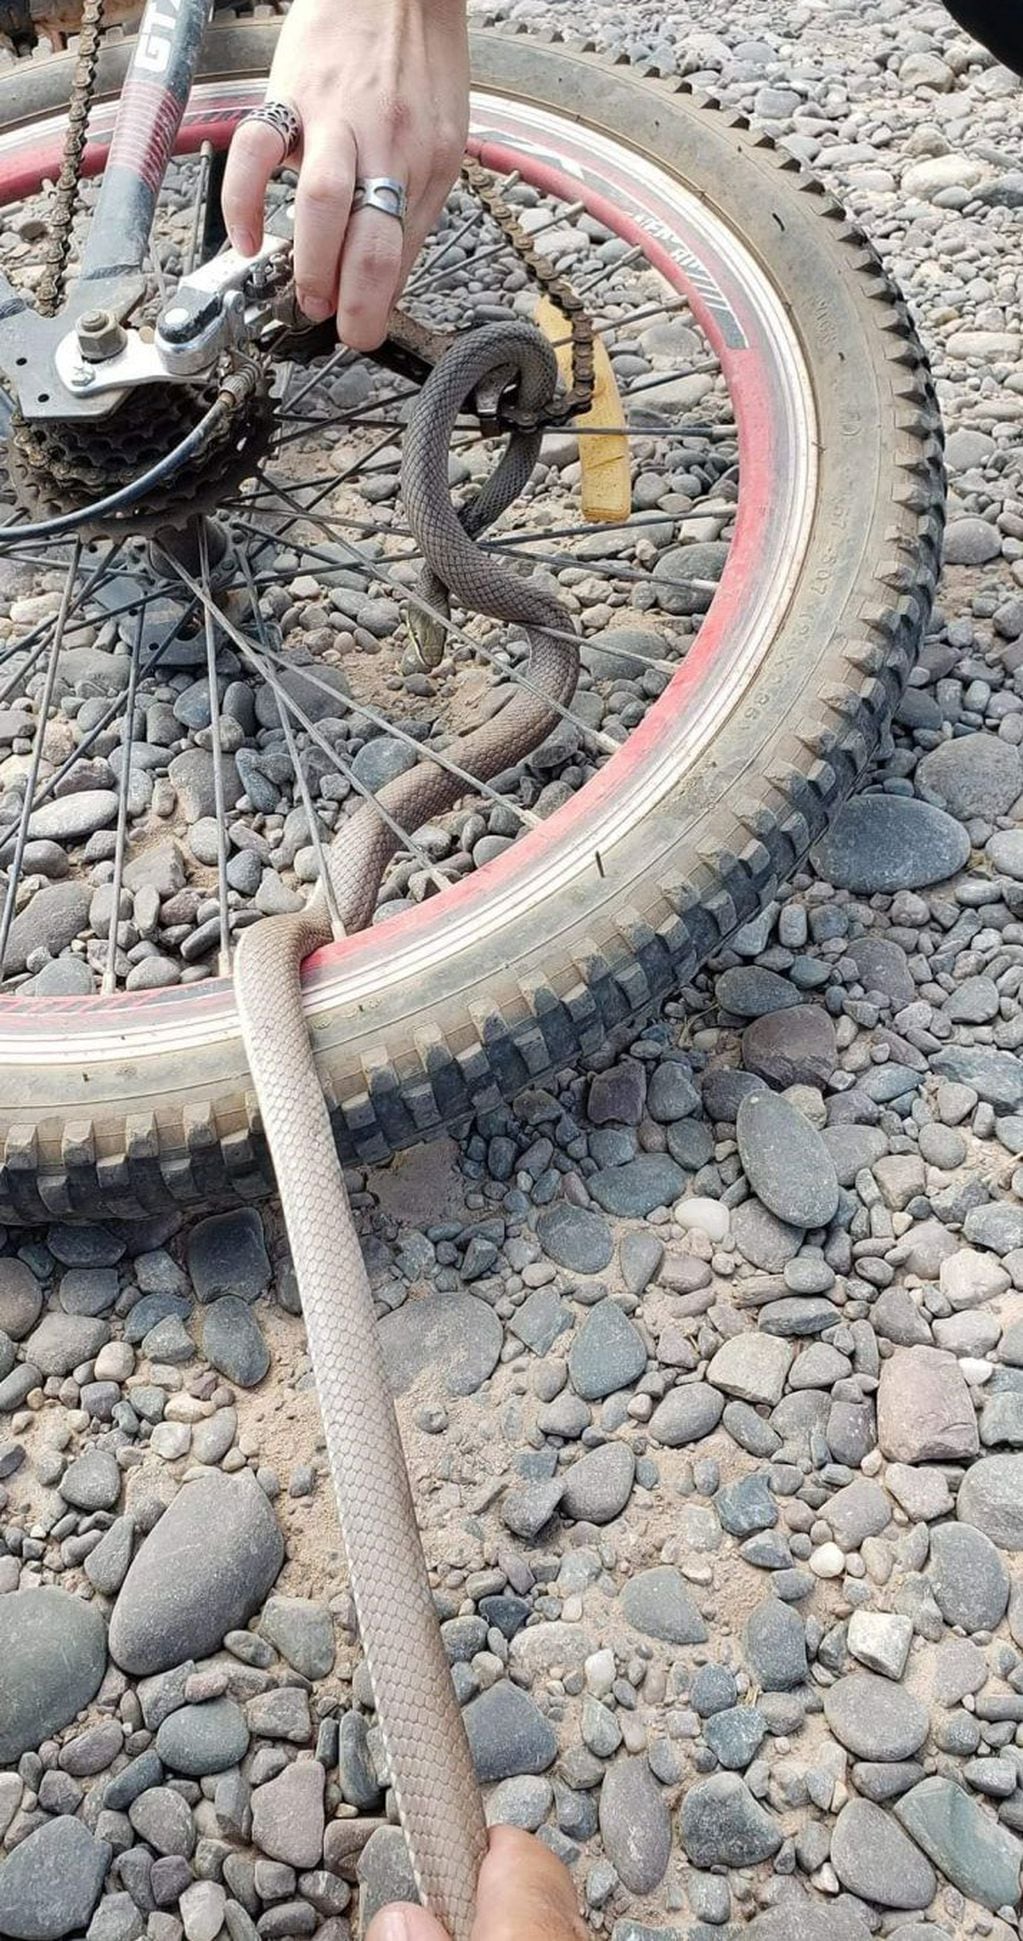 La joven pidió ayuda para que saquen a la serpiente de la rueda de su bicicleta.